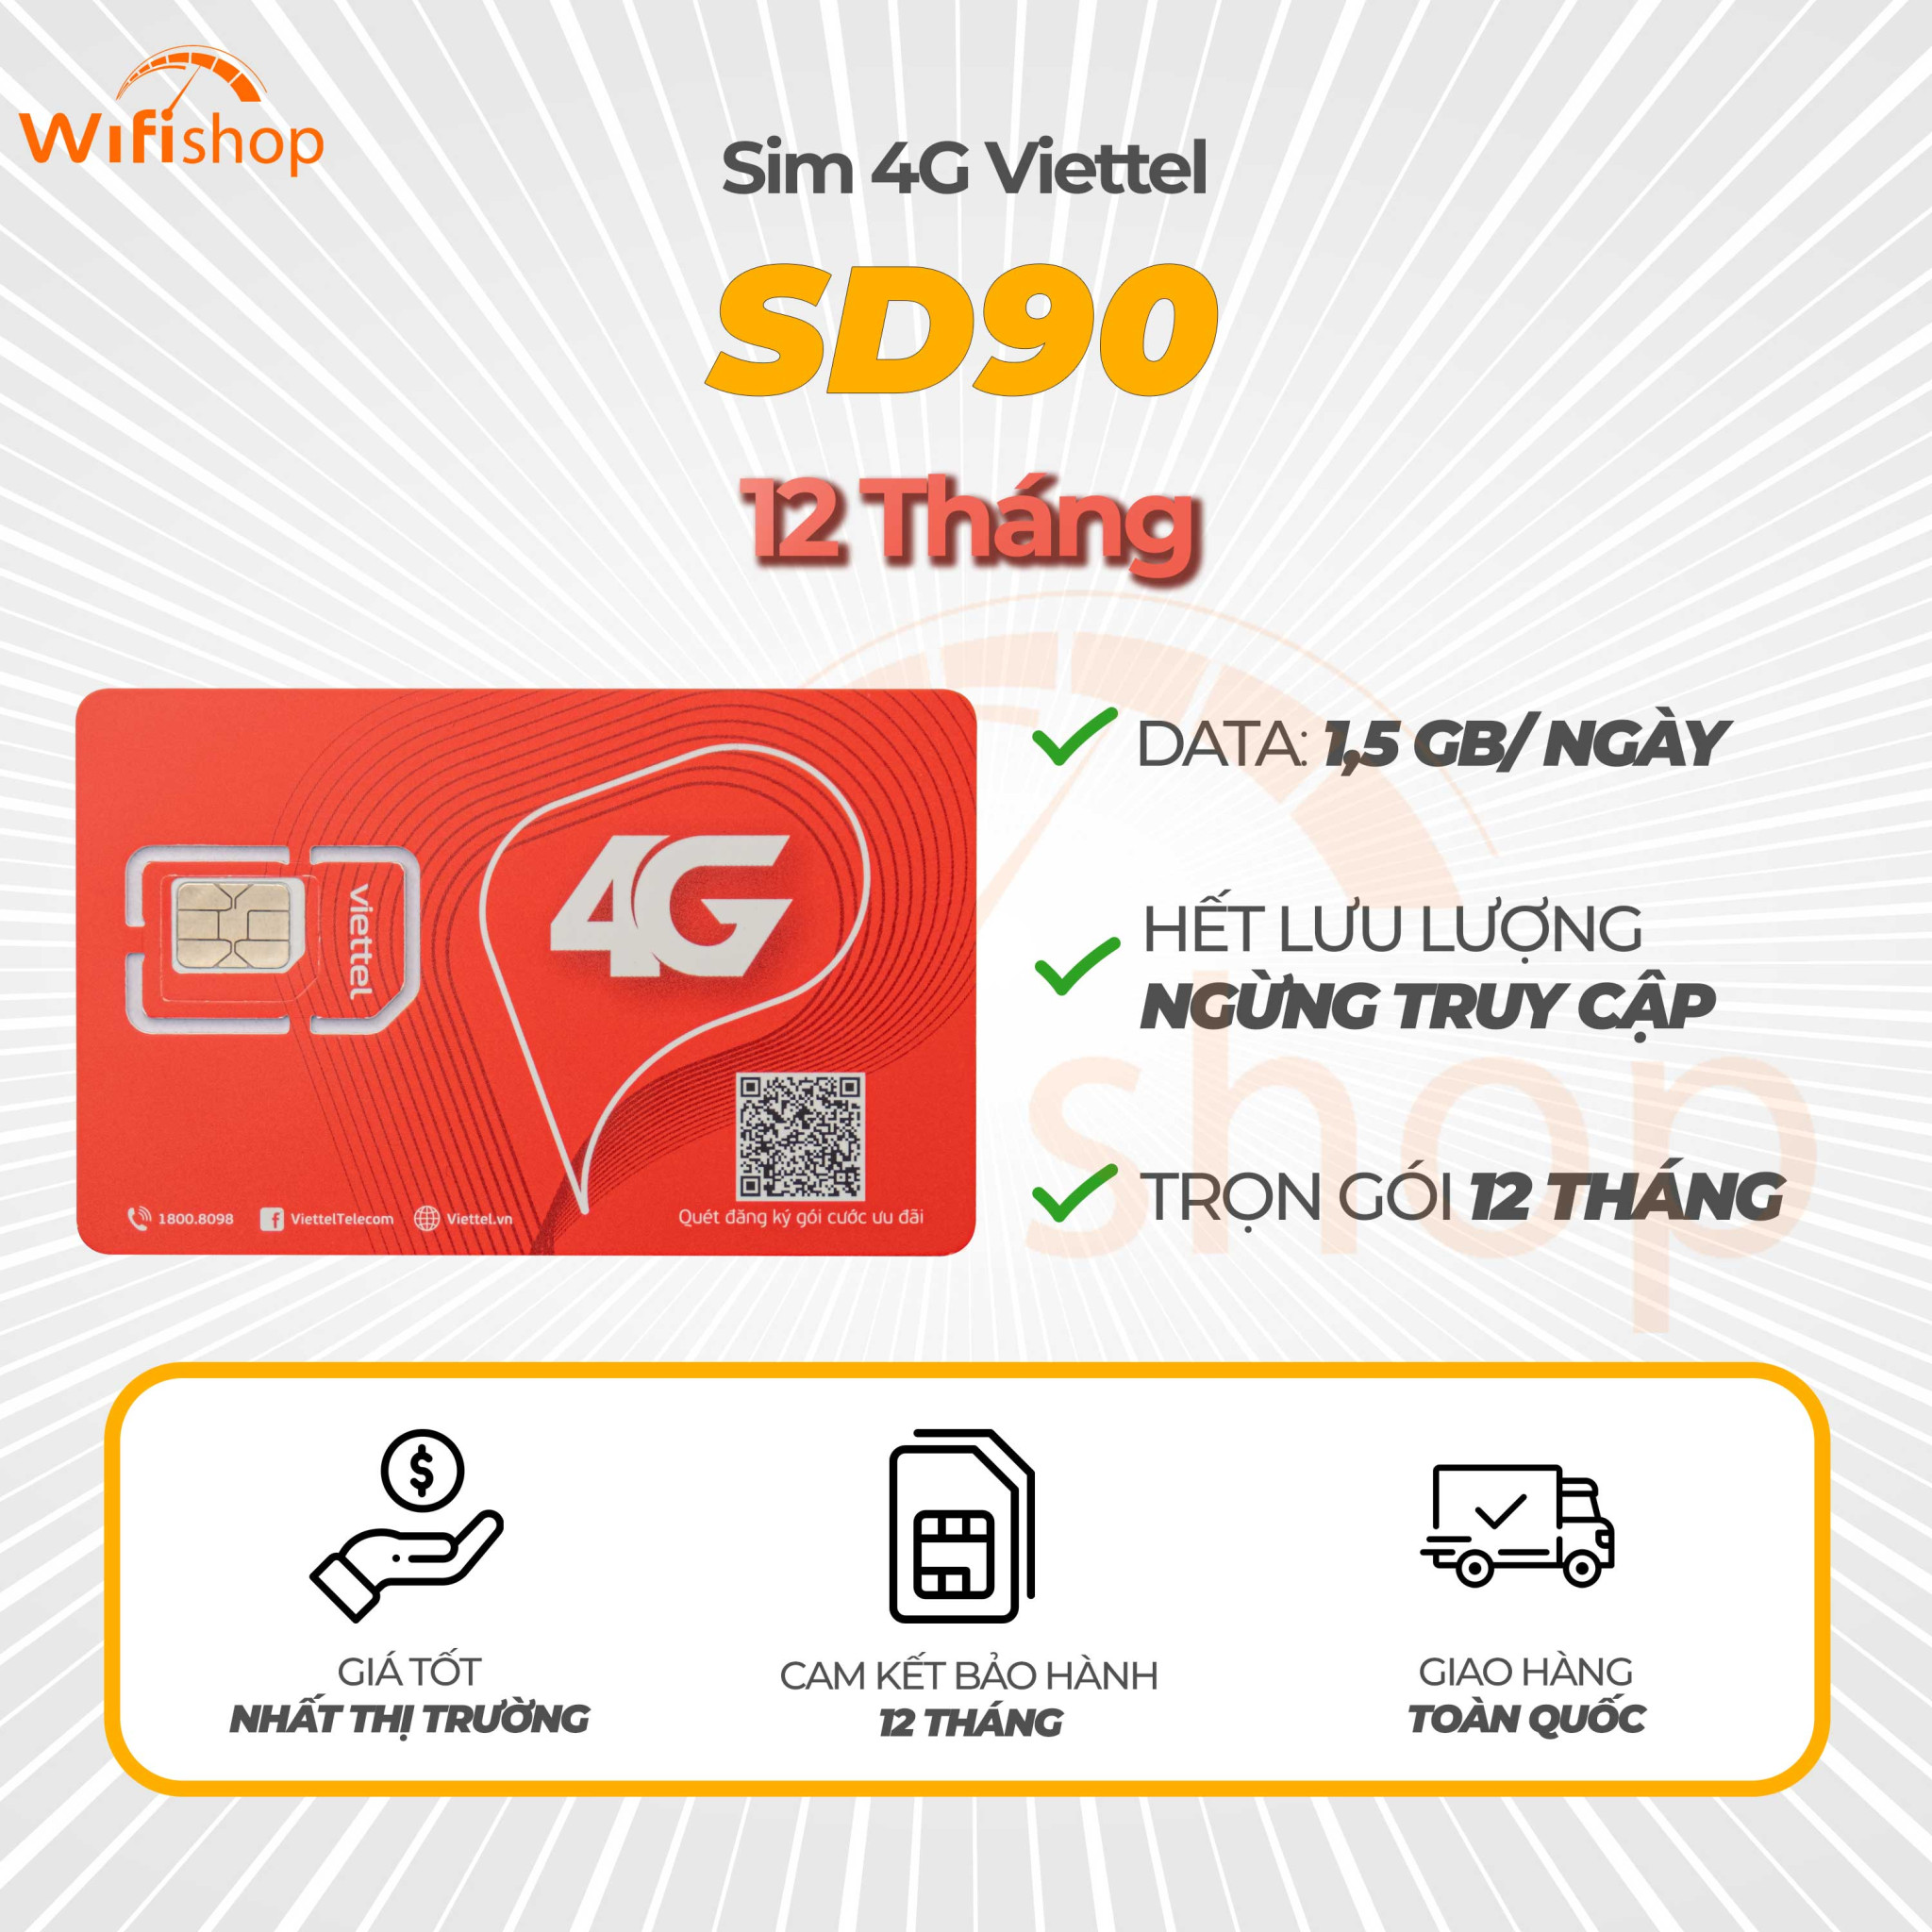 Sim Viettel SD90 1,5GB/Ngày (45GB/Tháng), Trọn gói 12 tháng